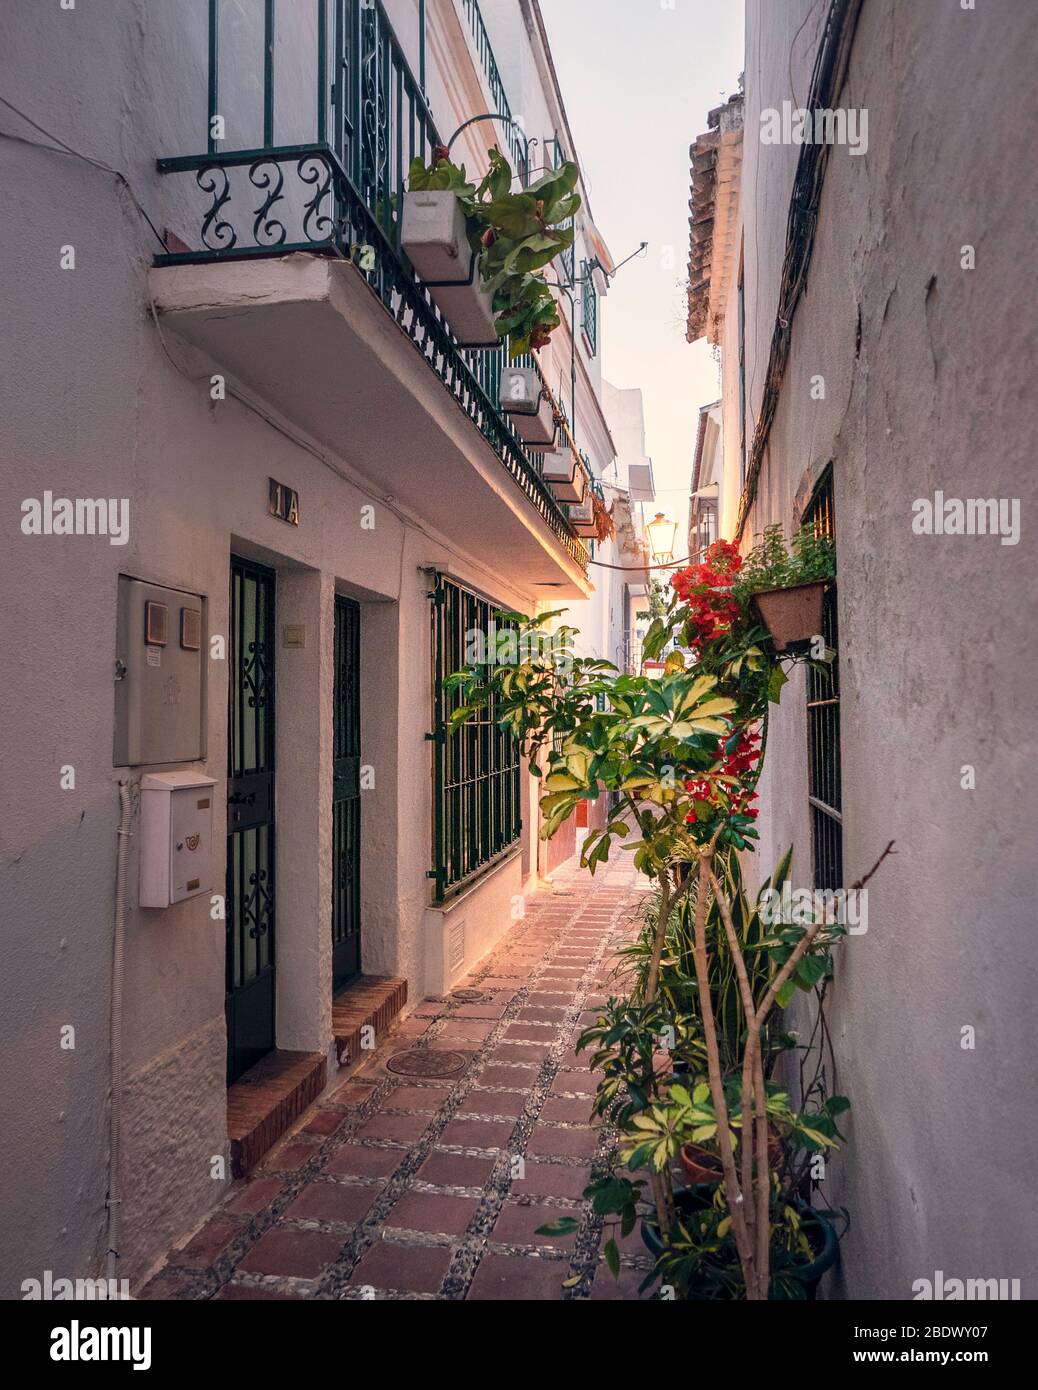 Un passage étroit et pittoresque dans la vieille ville de Marbella, Marbella, Espagne. Banque D'Images